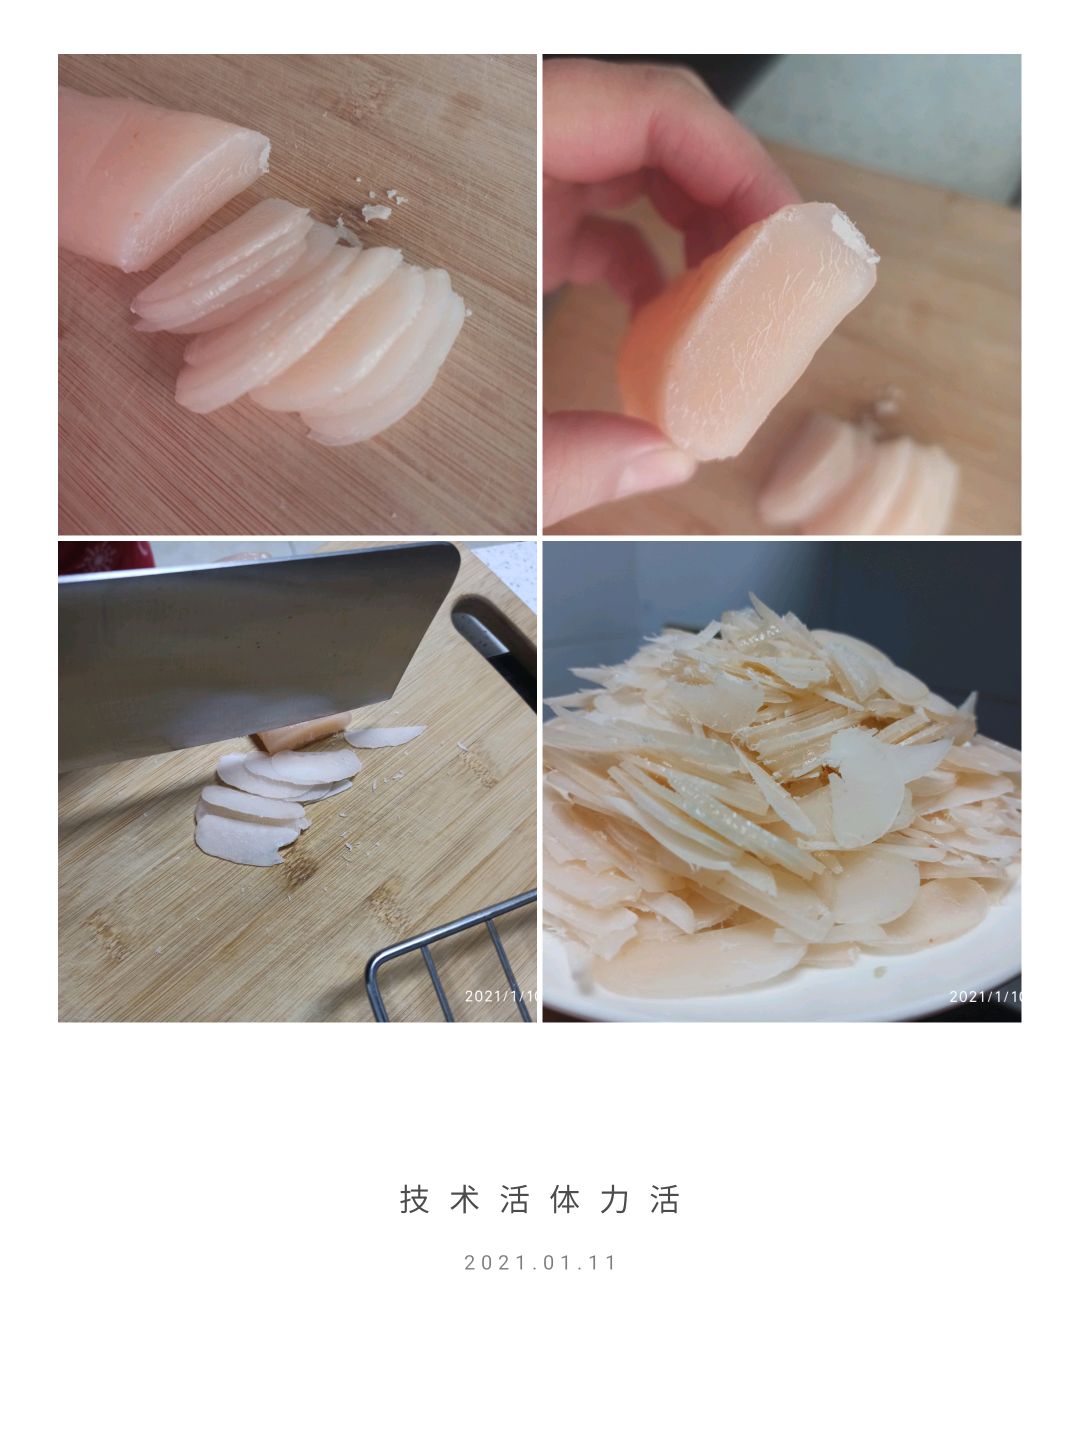 自制虾片，酥脆无添加剂，一颗颗大虾真材实料，过程简单0失败_哔哩哔哩 (゜-゜)つロ 干杯~-bilibili